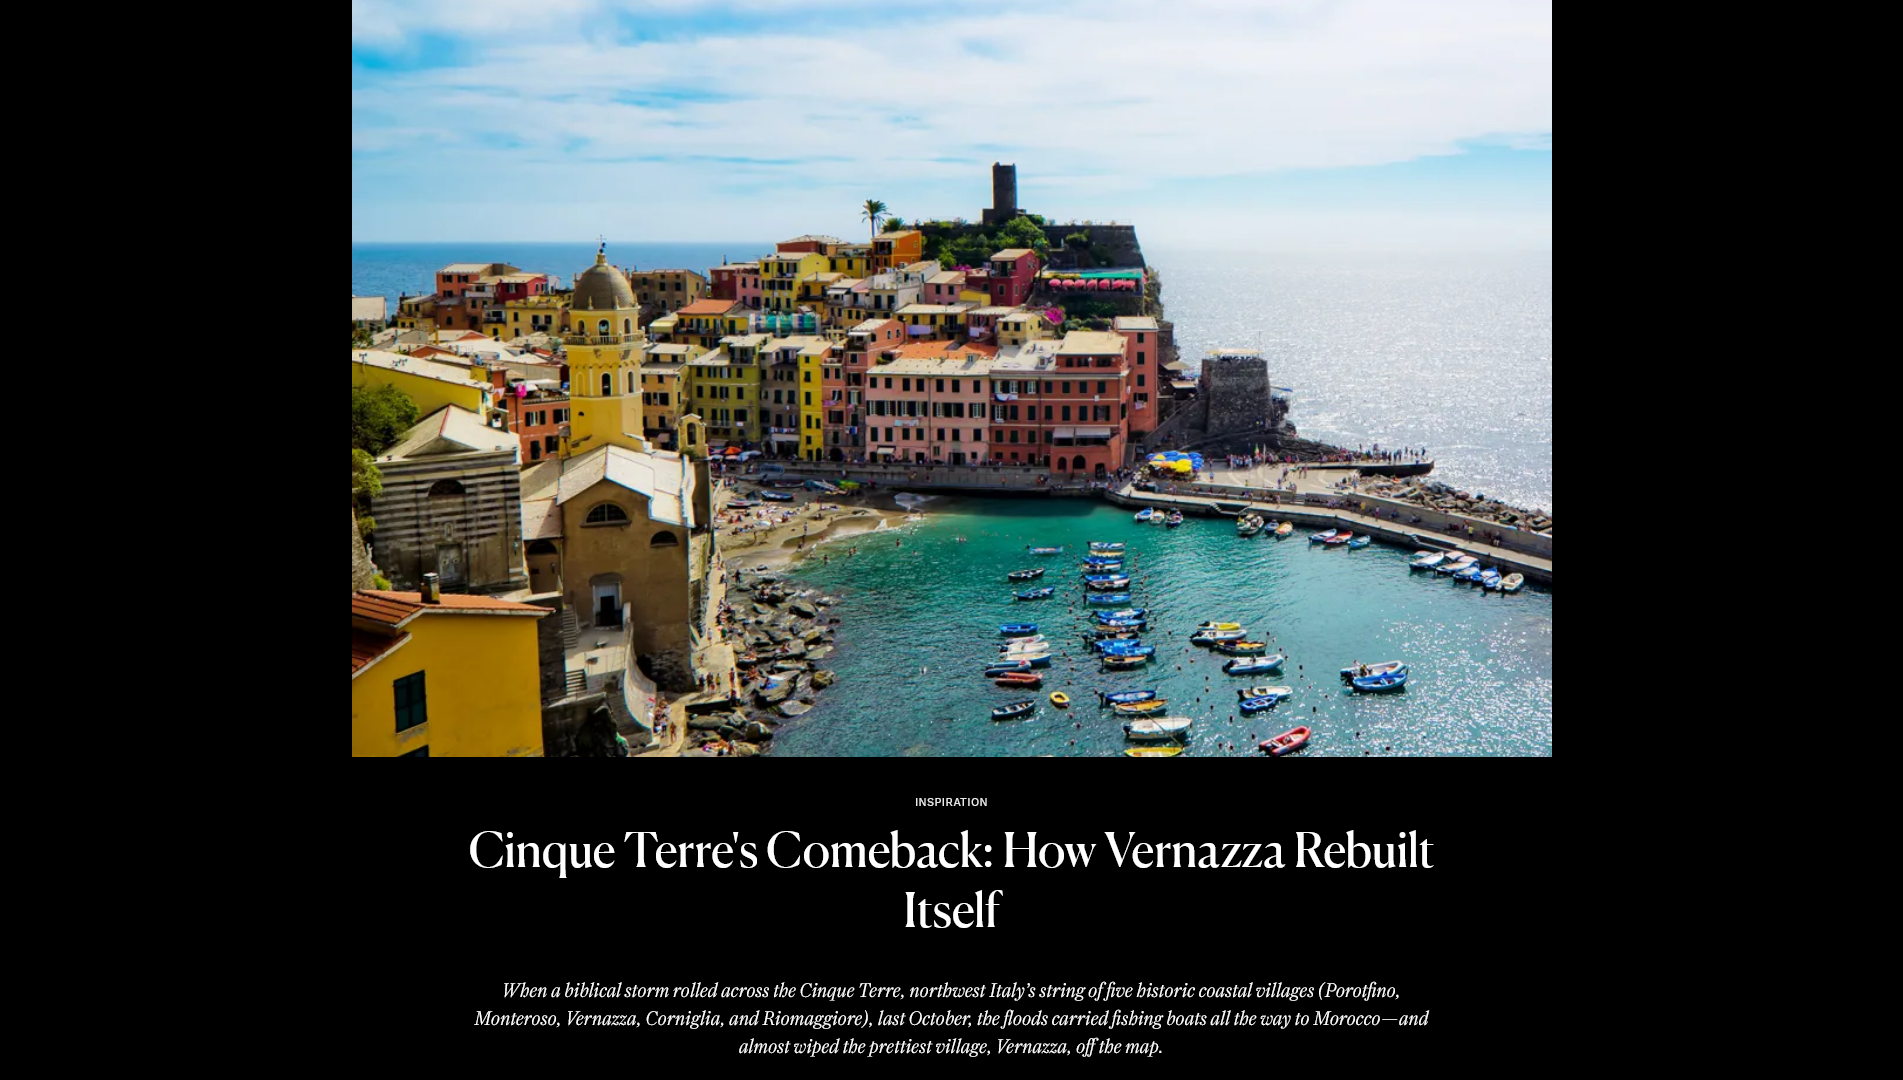 Cinque Terre’s Comeback: How Vernazza Rebuilt Itself